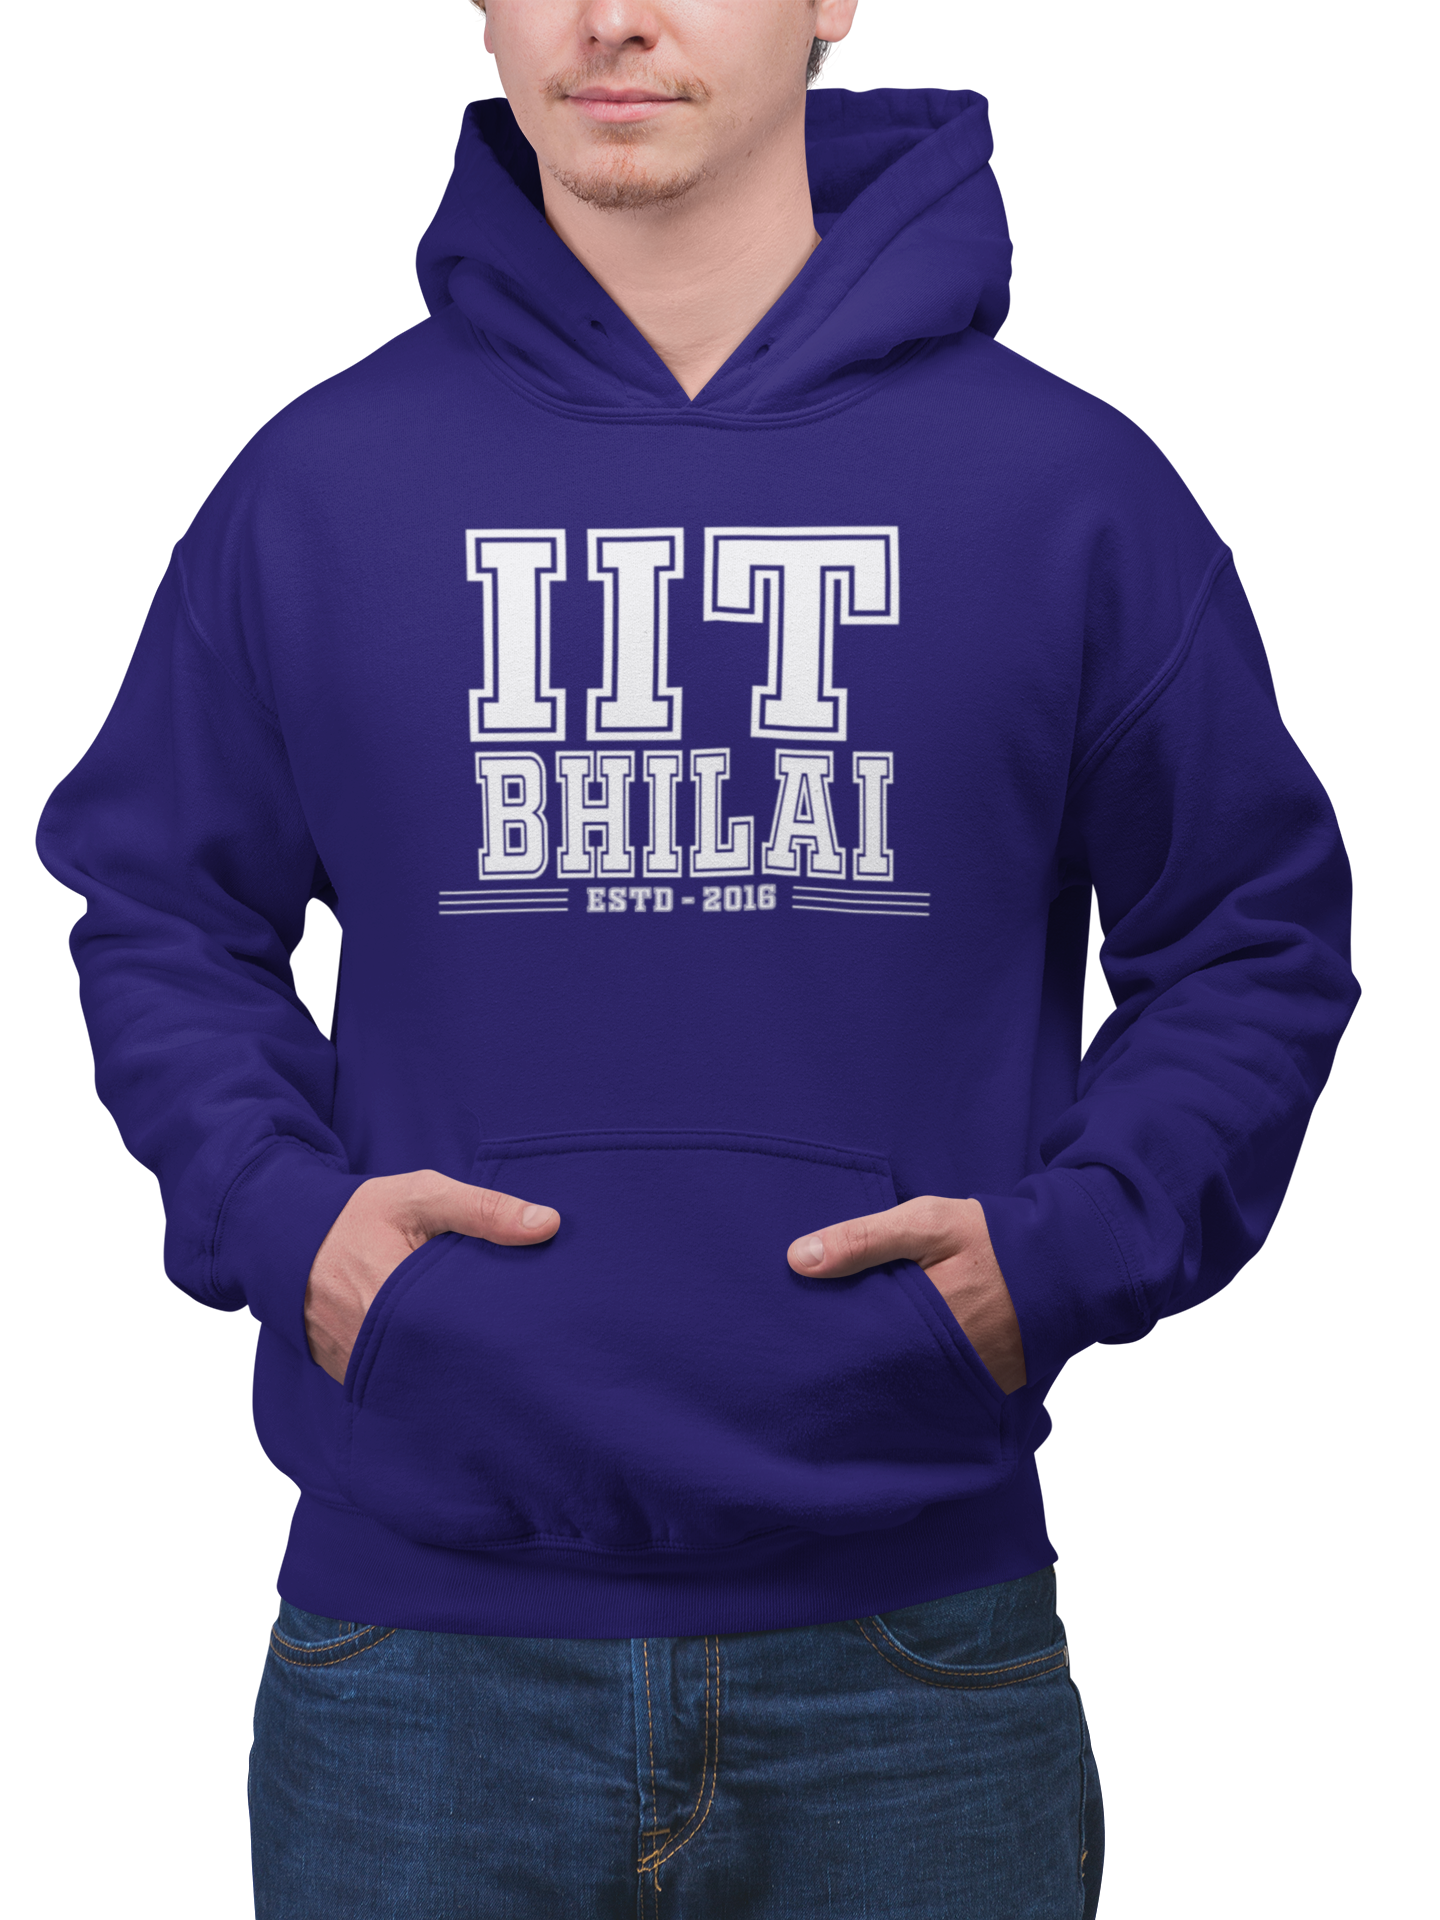 IIT Bhilai-teeshood.com